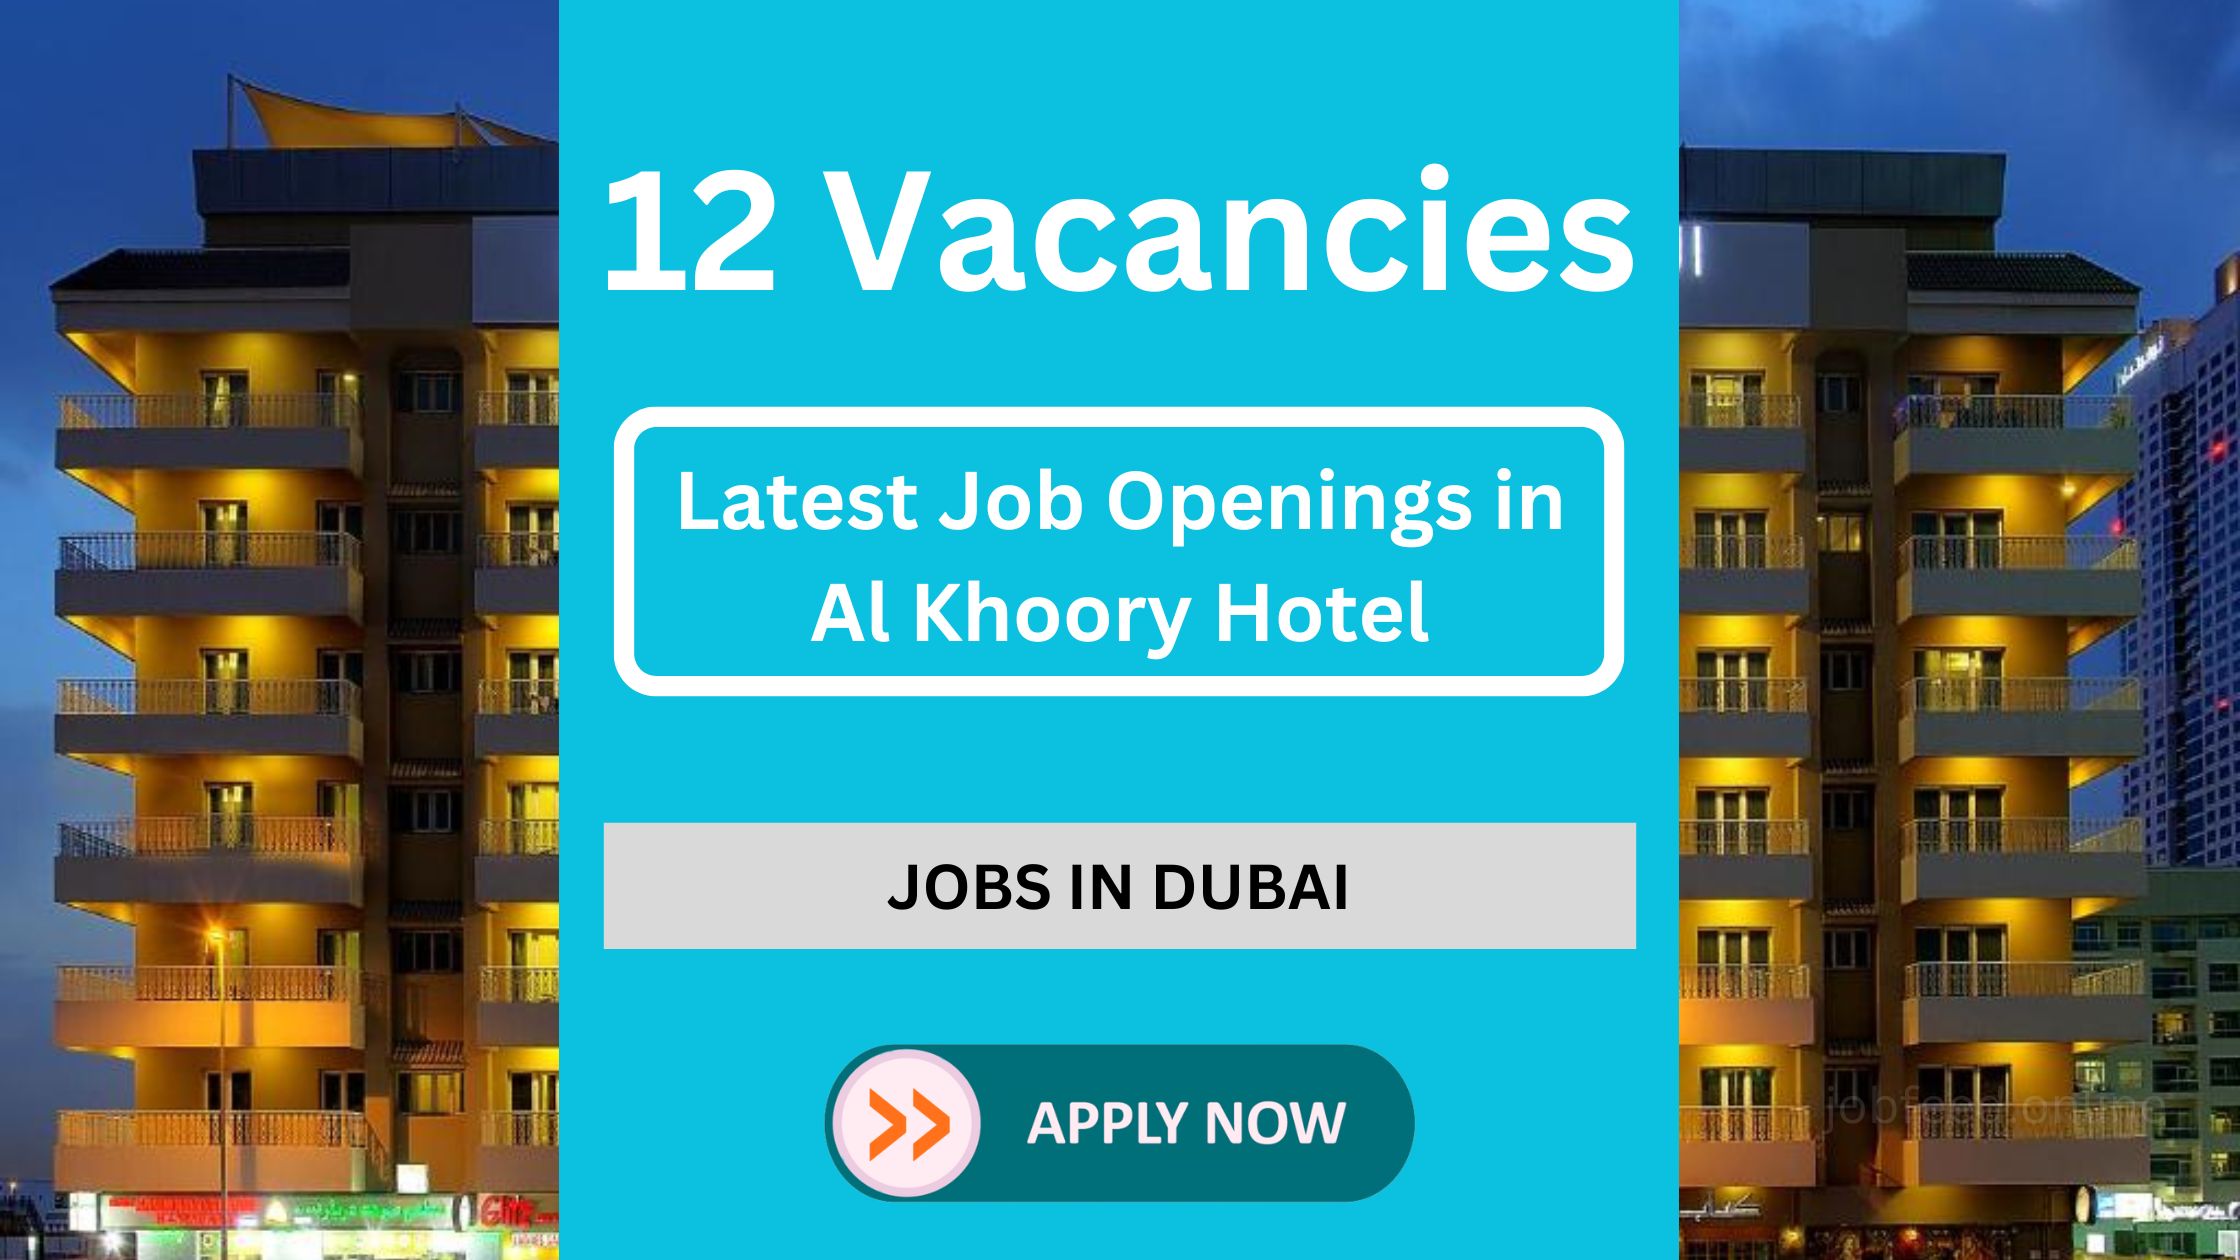 अल खुरी होटल दुबई में 12 नवीनतम नौकरी के उद्घाटन